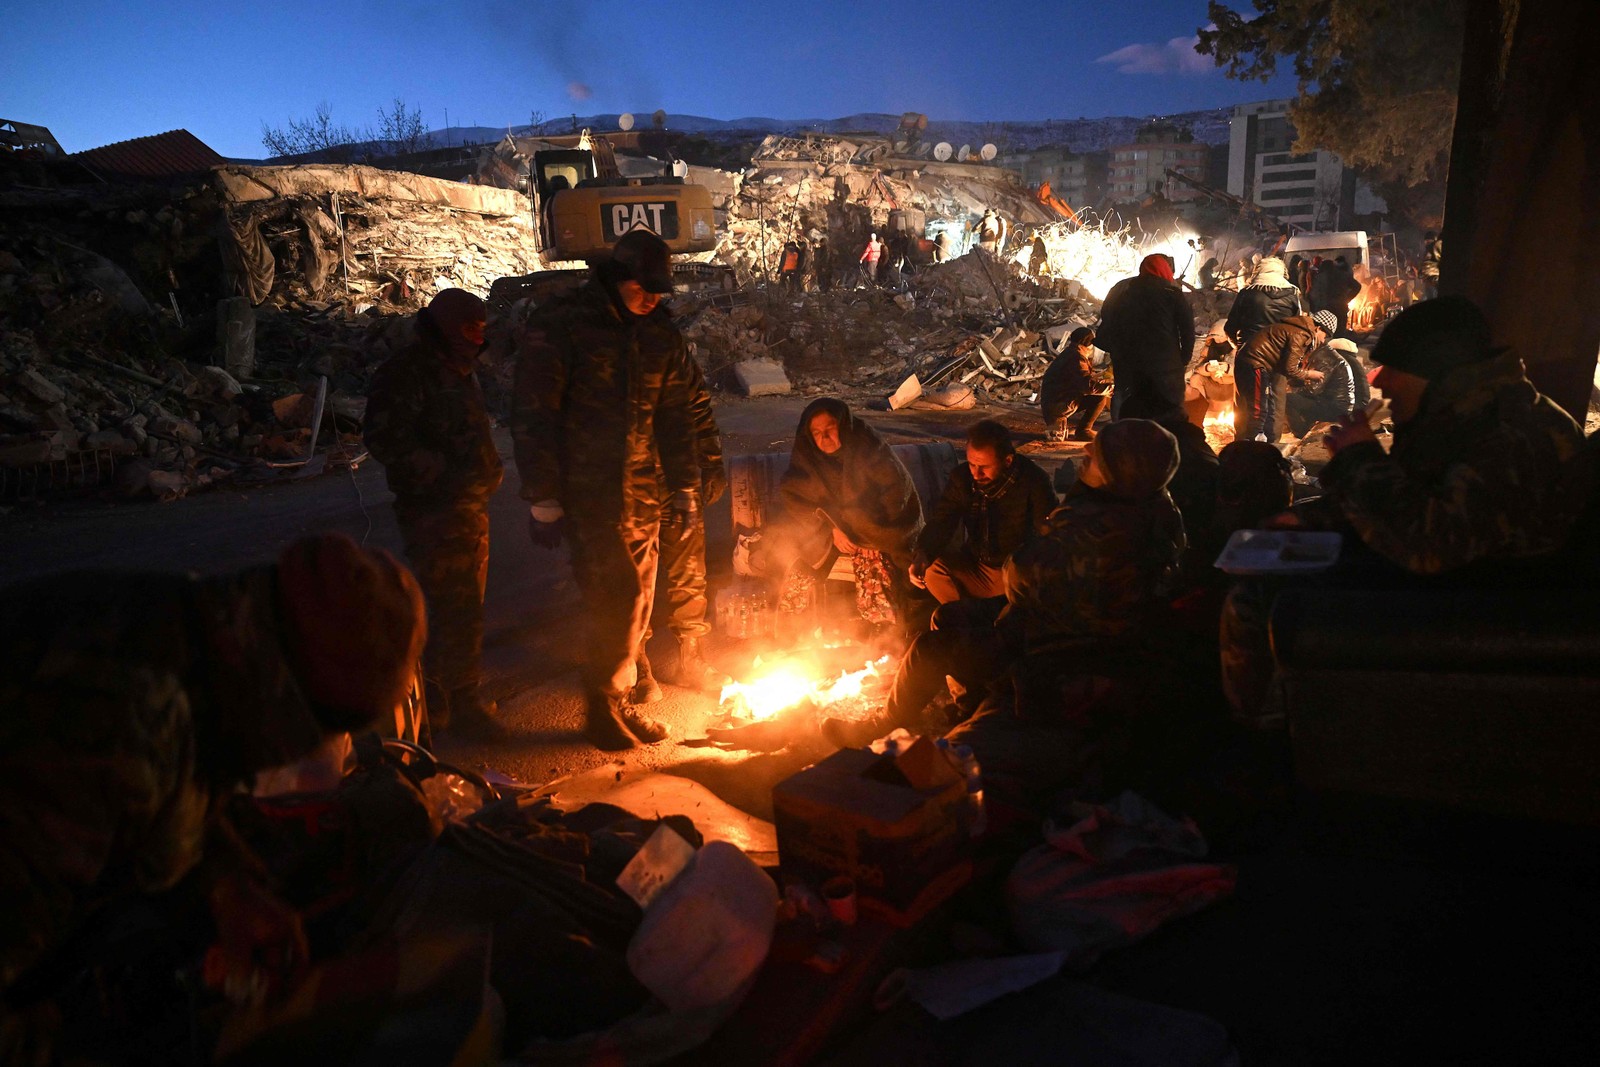 Equipe de resgate do Azerbaijão descansa perto de uma fogueira em meio aos escombros de edifícios desabados em Kahramanmaras, na Turquia — Foto: OZAN KOSE/AFP